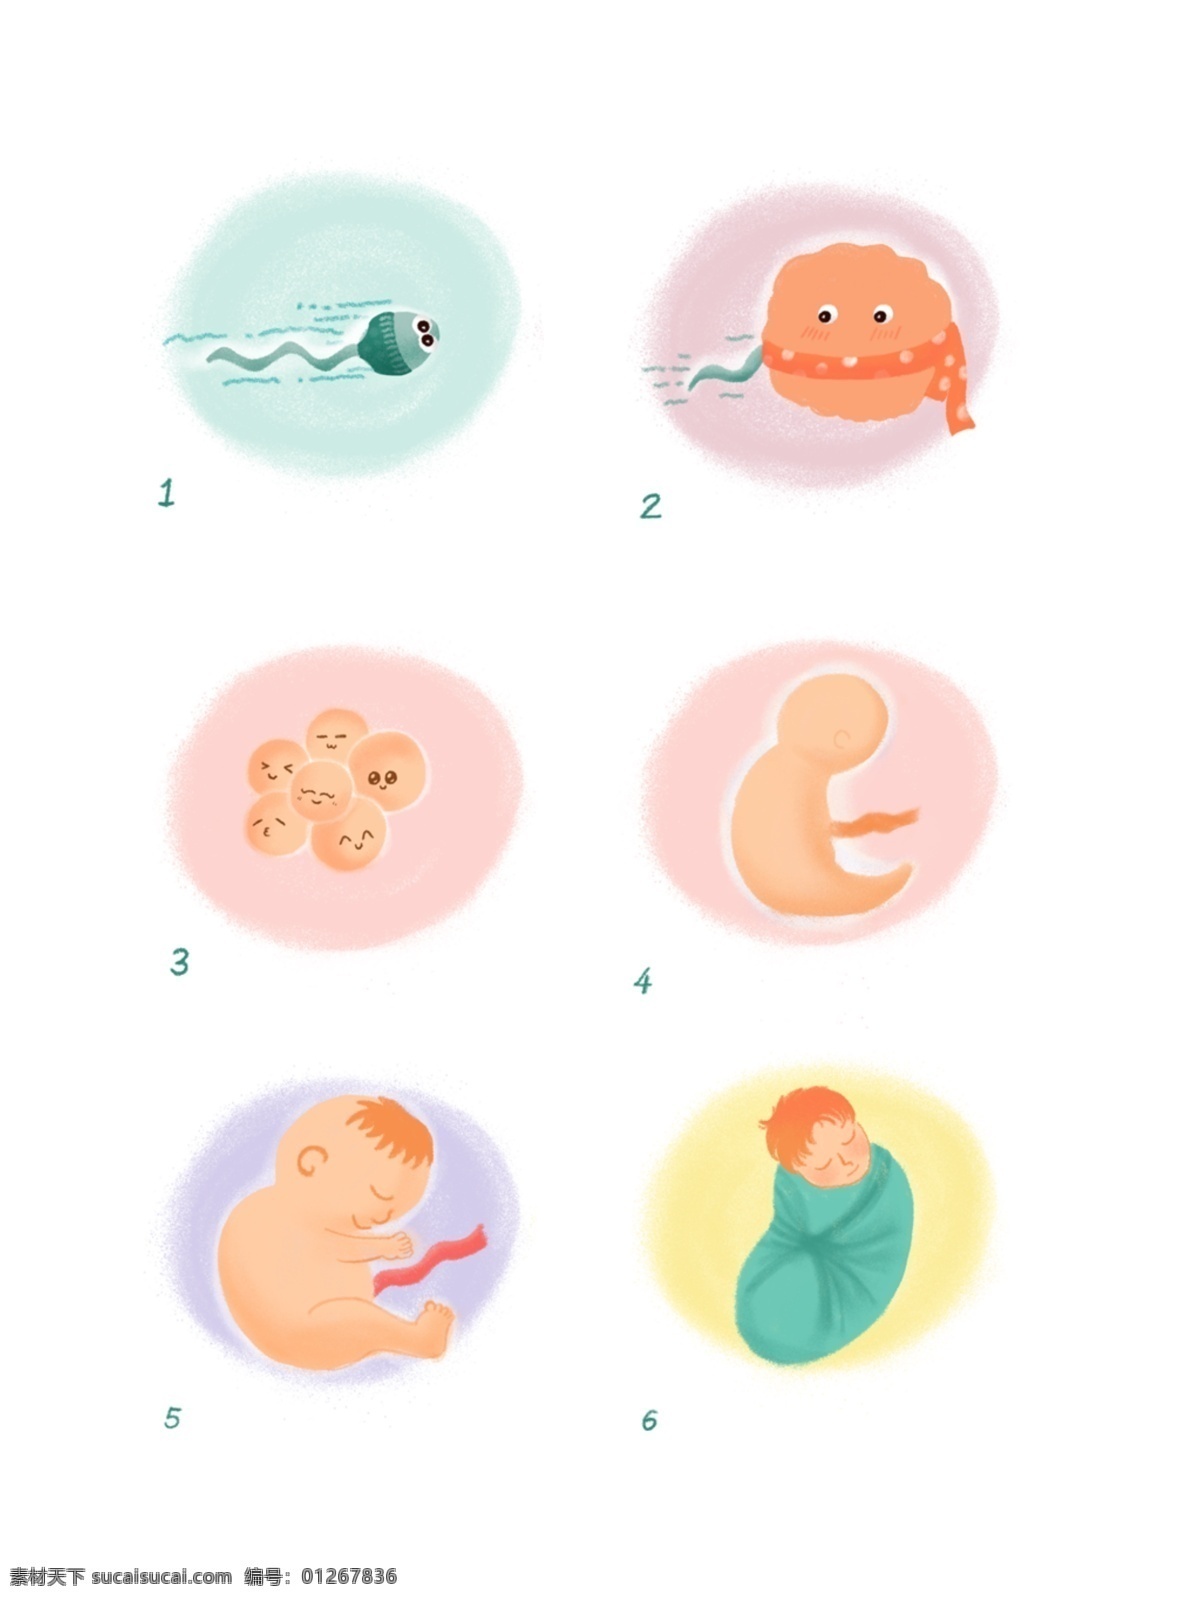 精子 卵子 宝宝 出生 过程 宝宝出生 人的生长过程 手绘